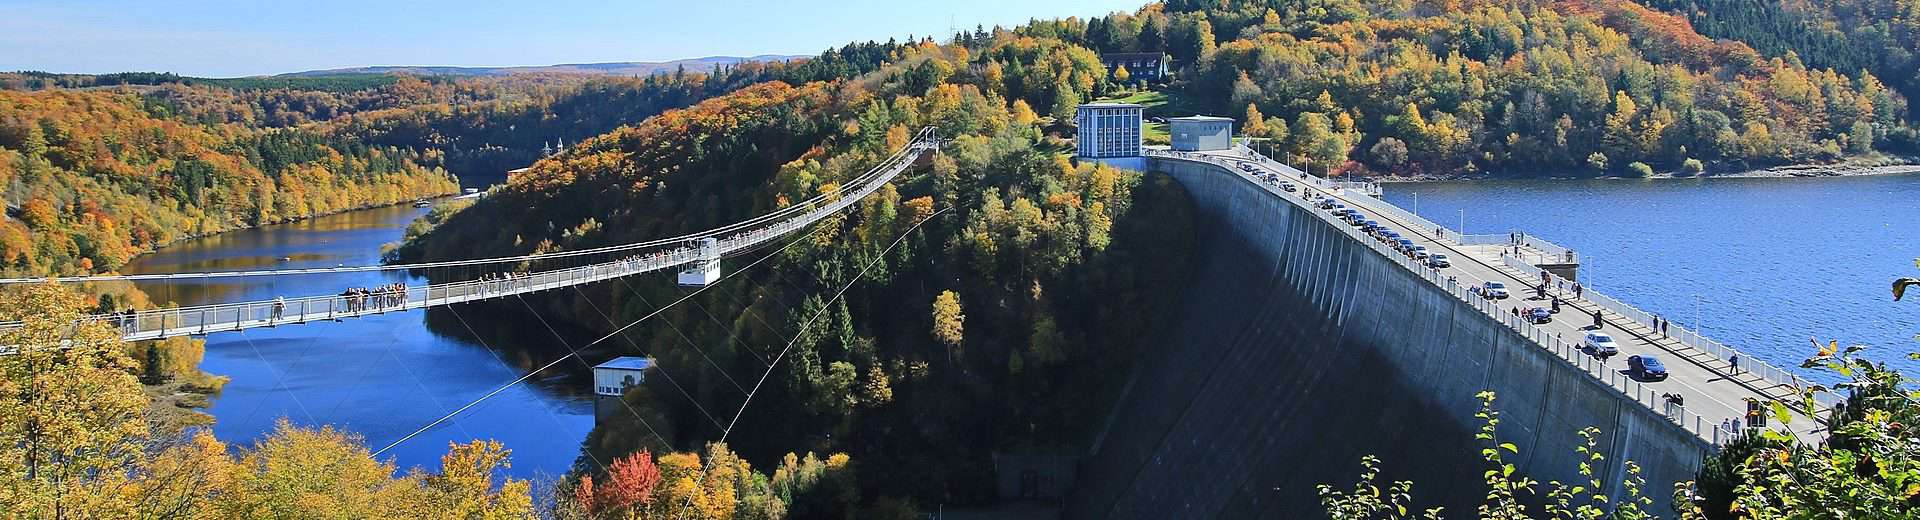 Rappbodetalsperre und Fußgängerhängebrücke Titan-RT im Harz